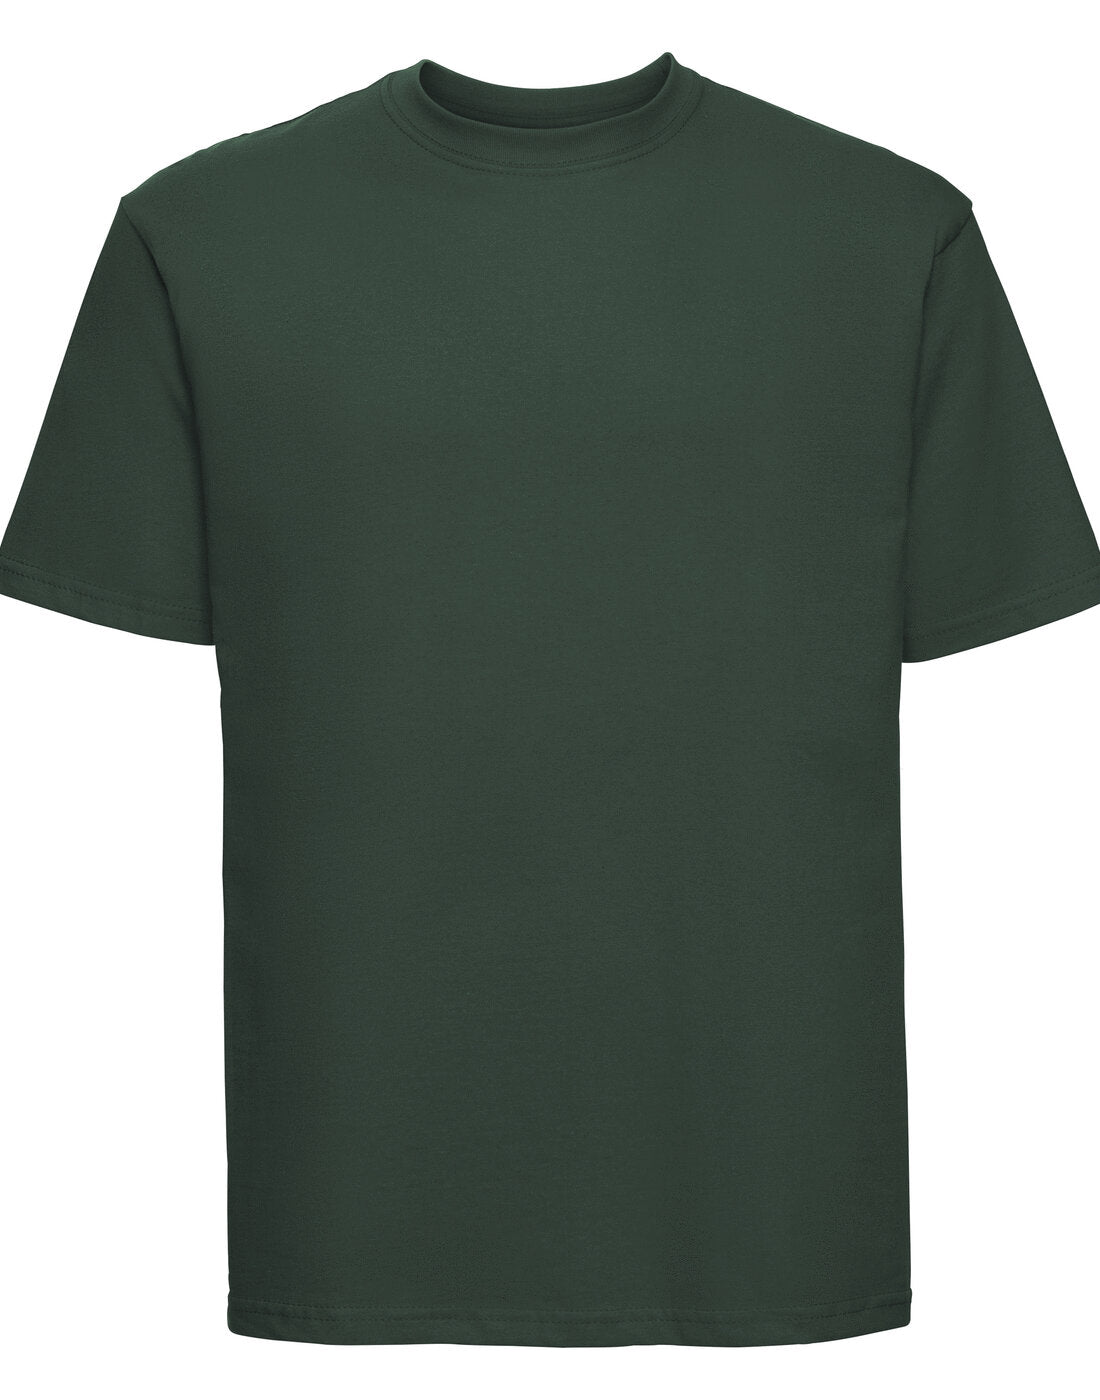 Russell Classic Unisex T-Shirt - Bottle Green